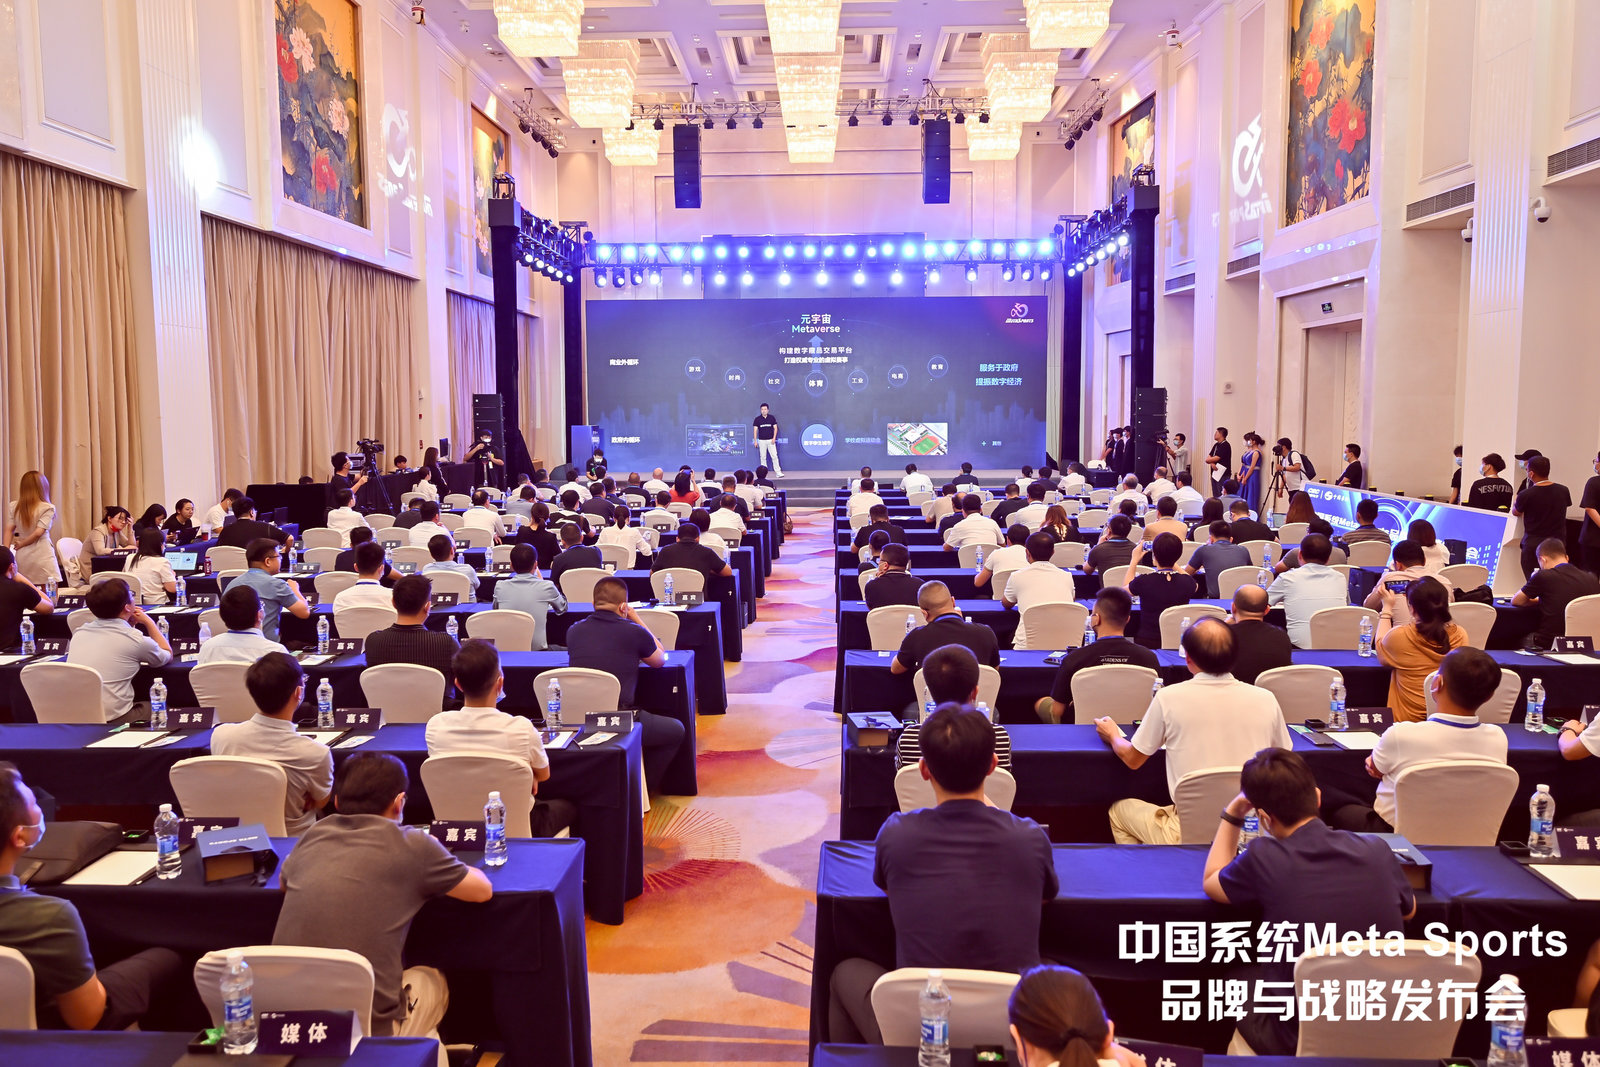 引领数字体育变革 中国系统发布数字体育品牌Meta Sports